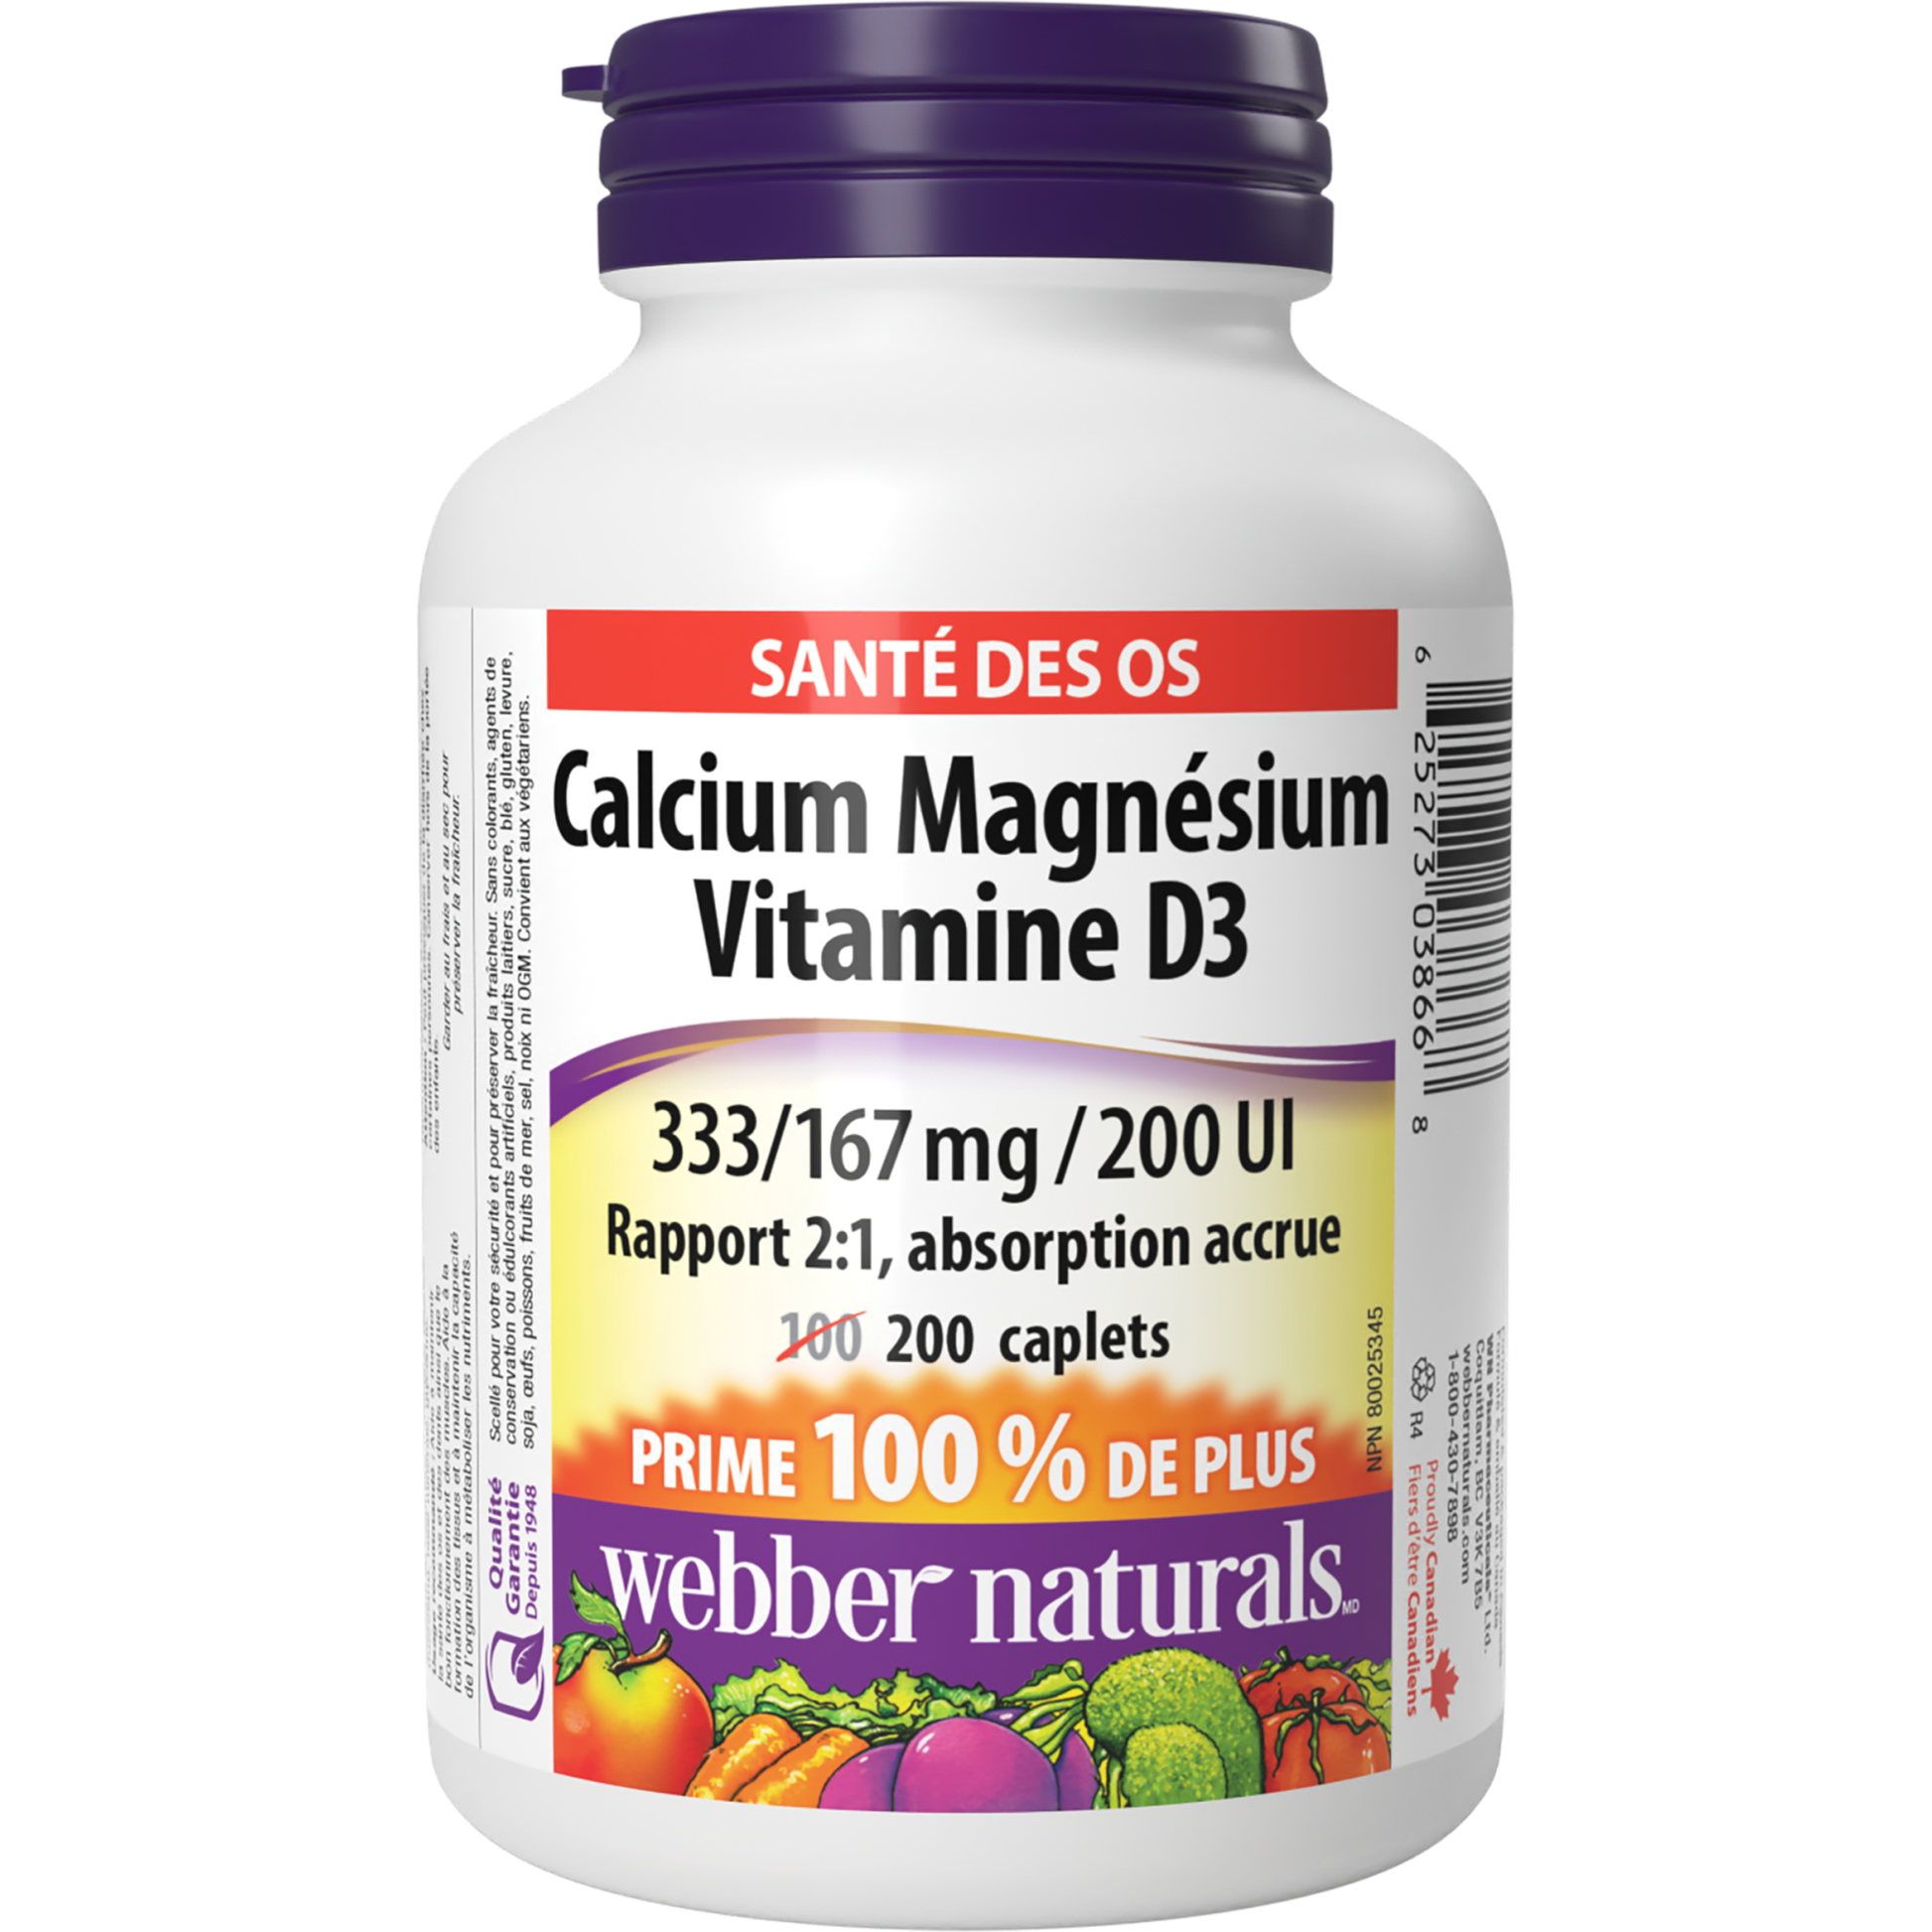 Calcium Magnésium Vitamine D3 Rapport 2:1, absorption accrue 333/167 mg / 200 UI for Webber Naturals|v|hi-res|WN3866